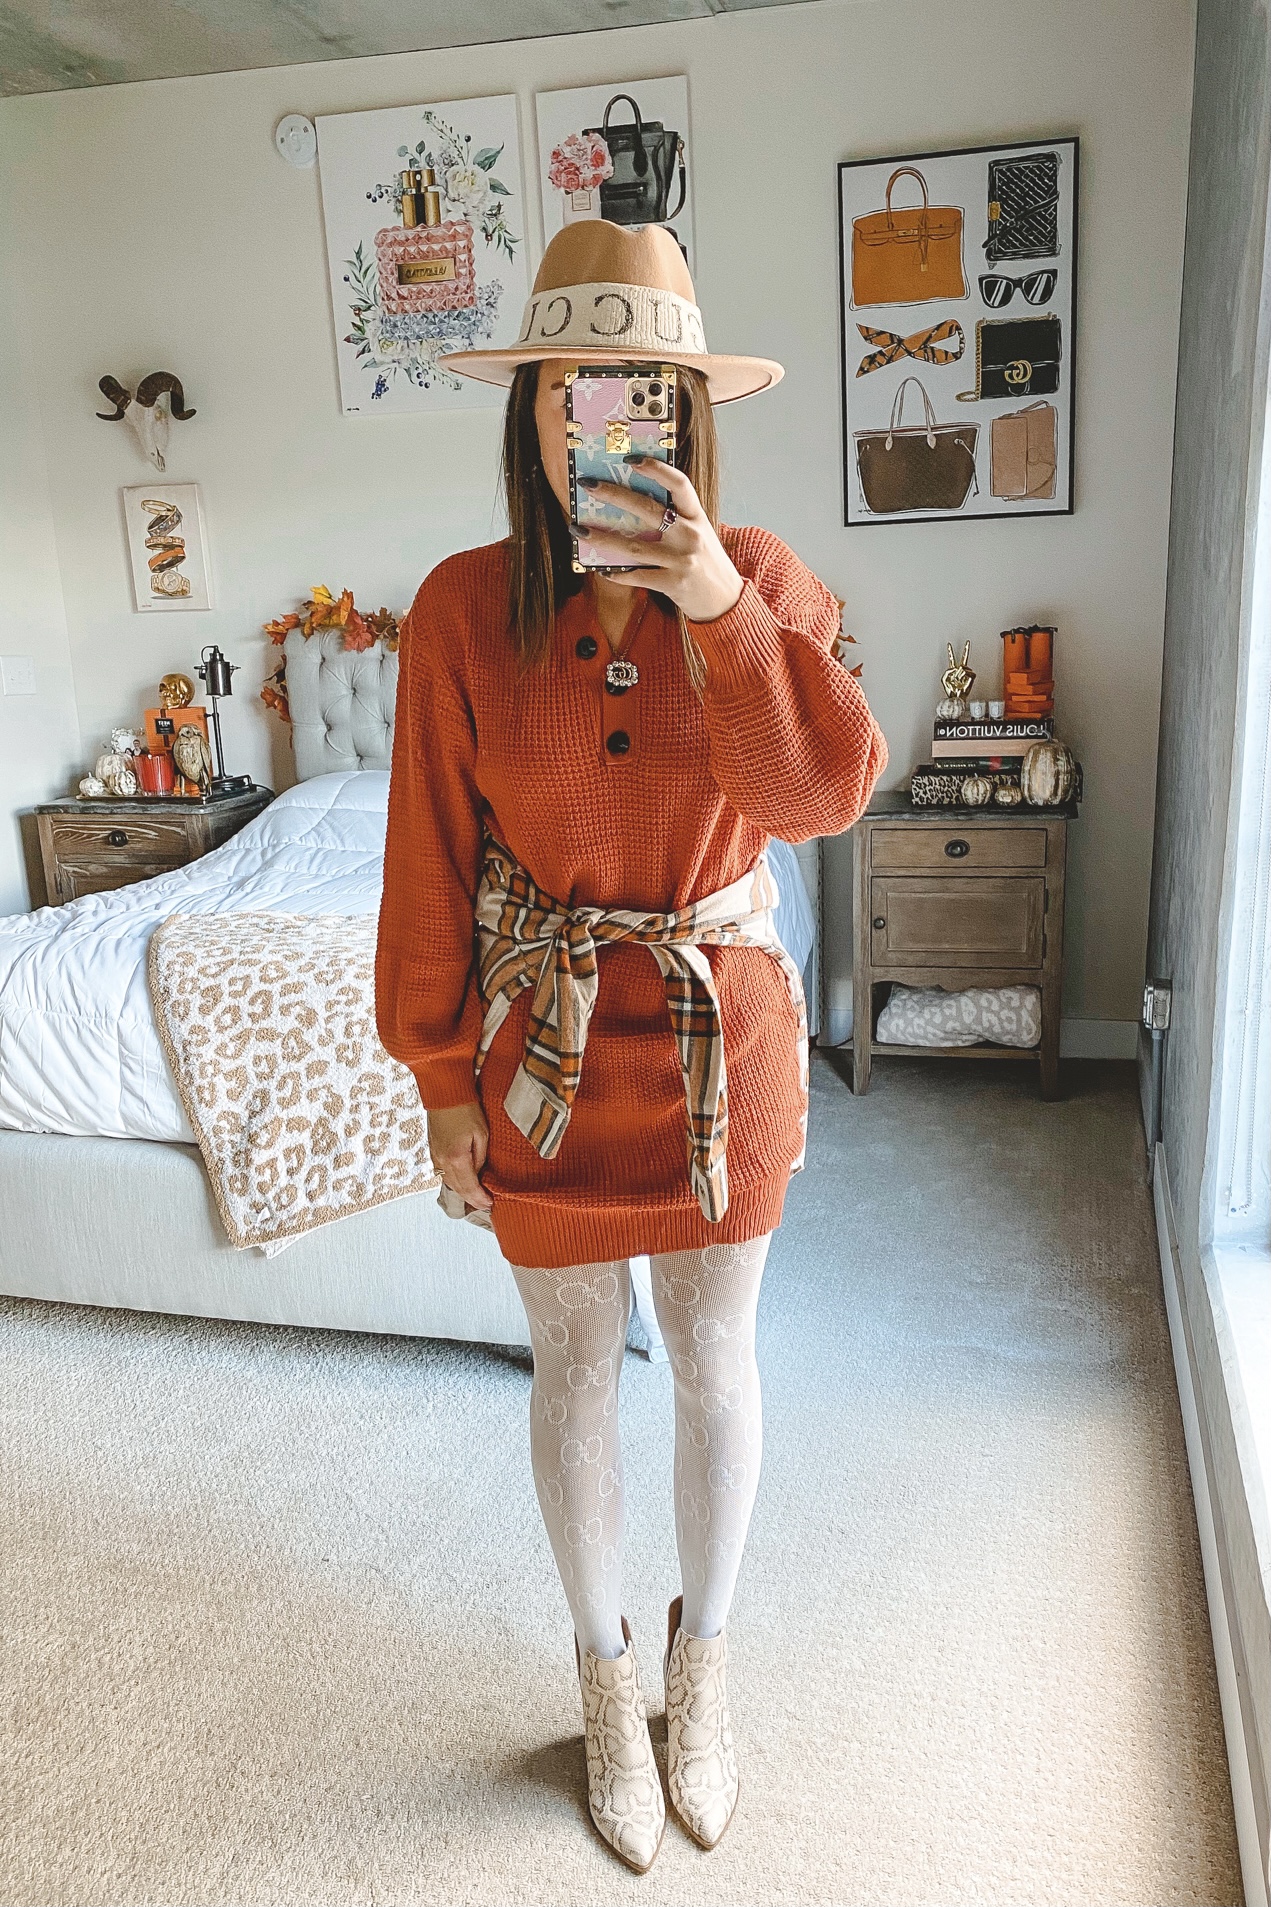 How To Style a Sweatshirt Dress - StyledJen